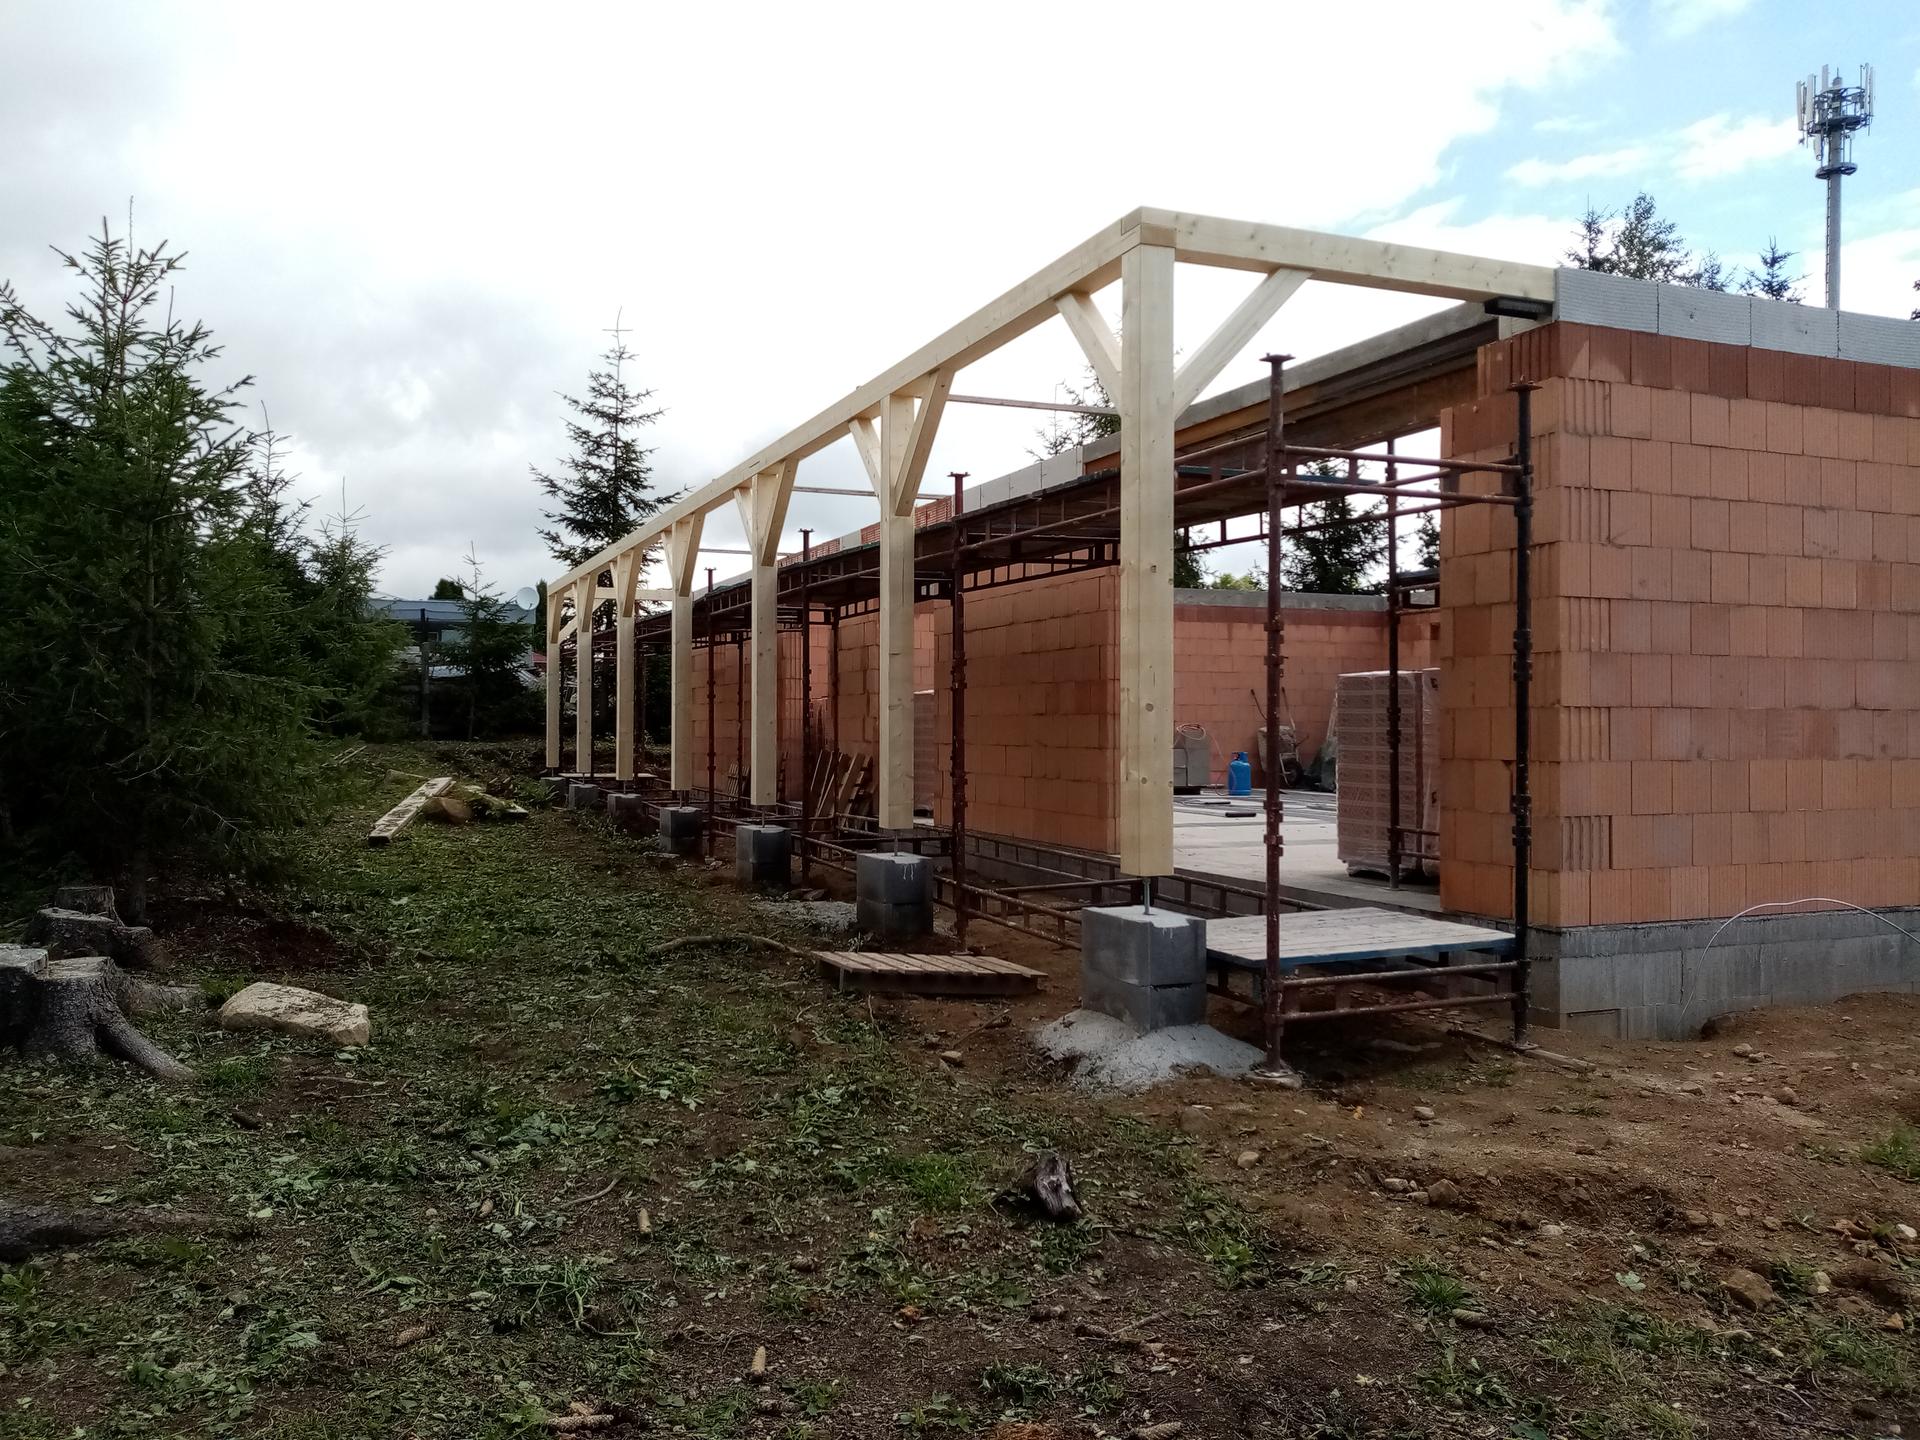 Projekt víkendové bydlení II (aneb návrat ke kořenům) - Konstrukce terasy